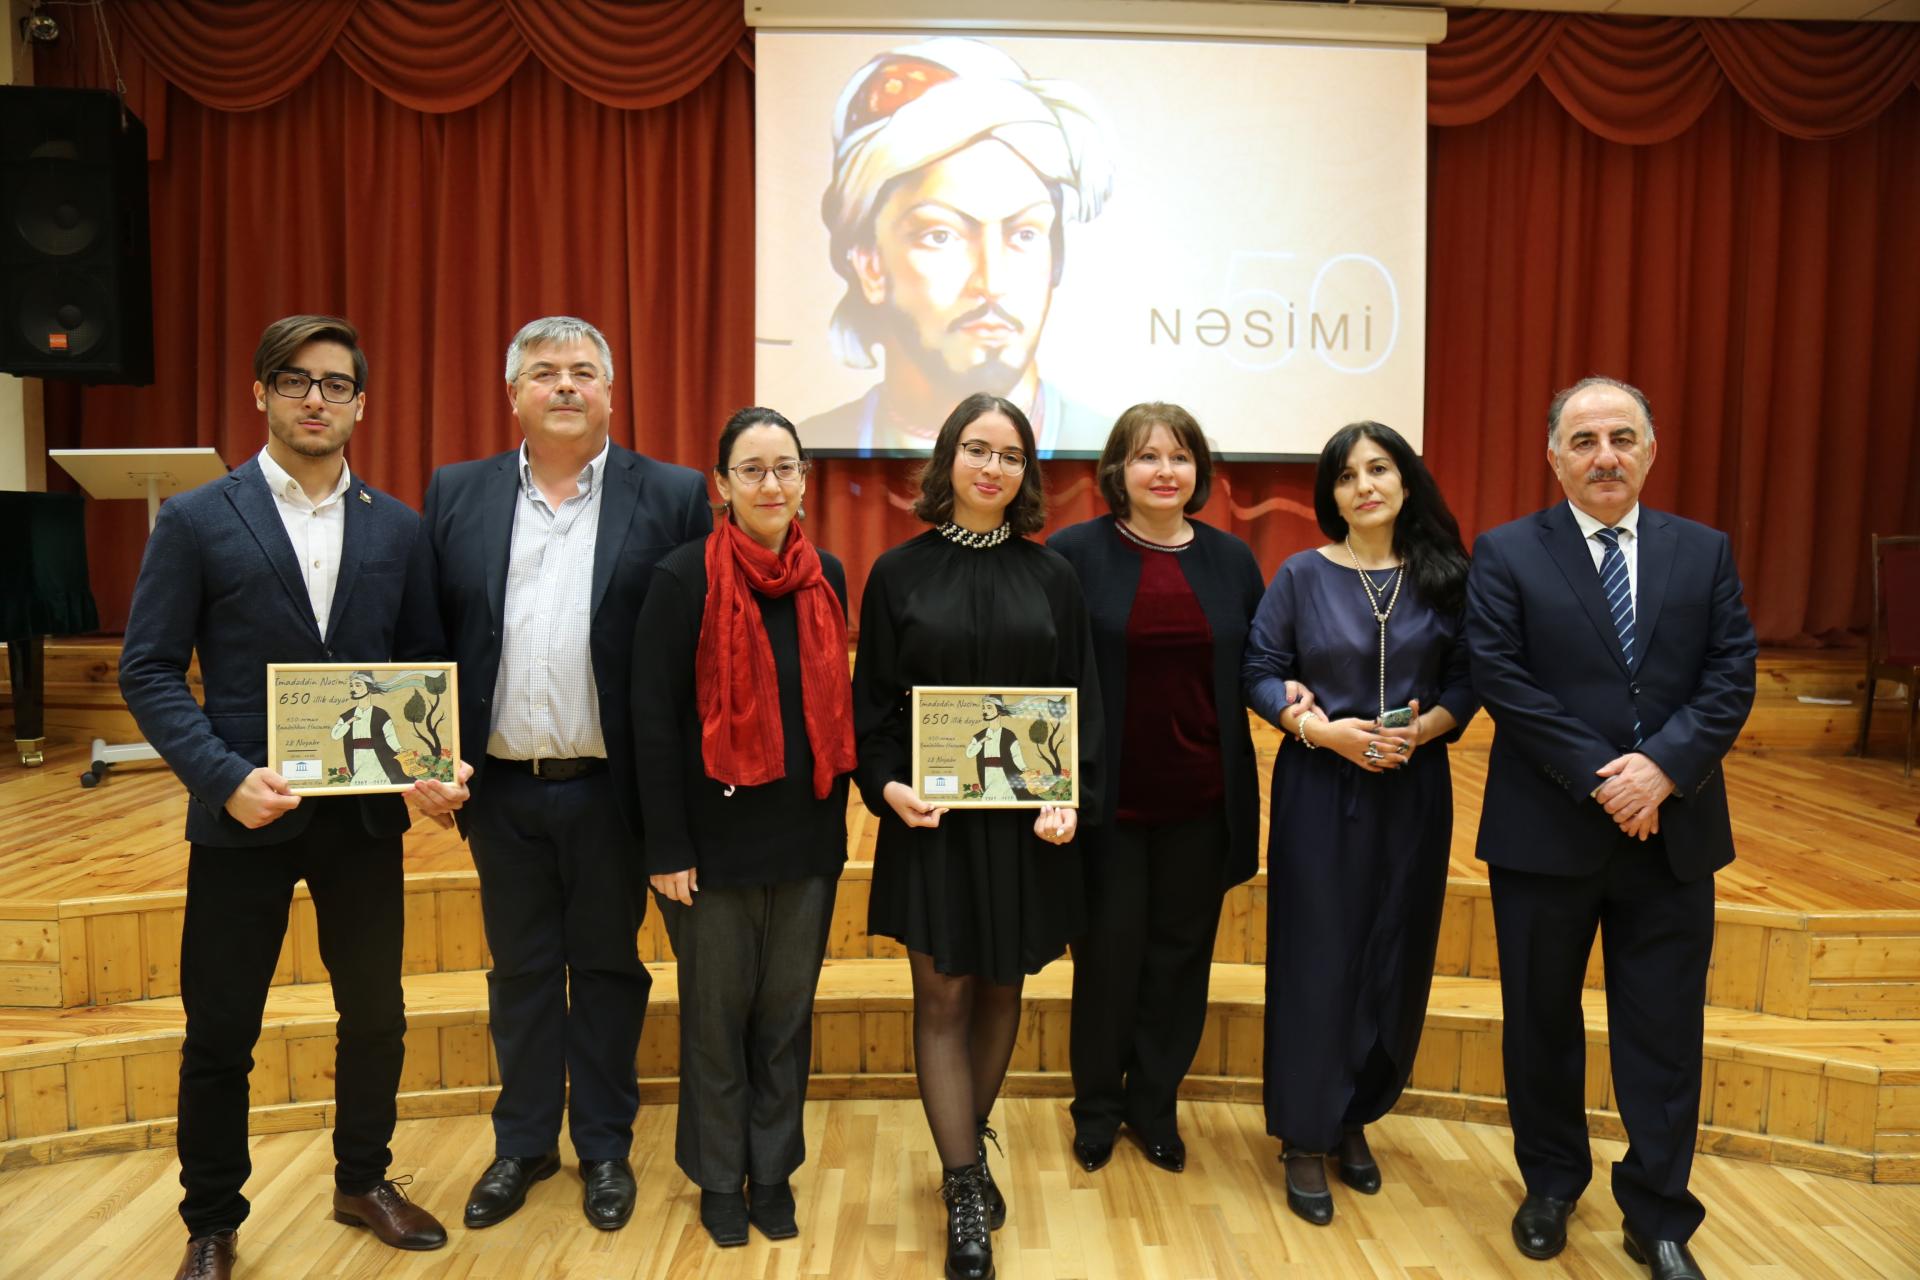 В Риге отметили 650-летие великого азербайджанского поэта Насими (ФОТО)